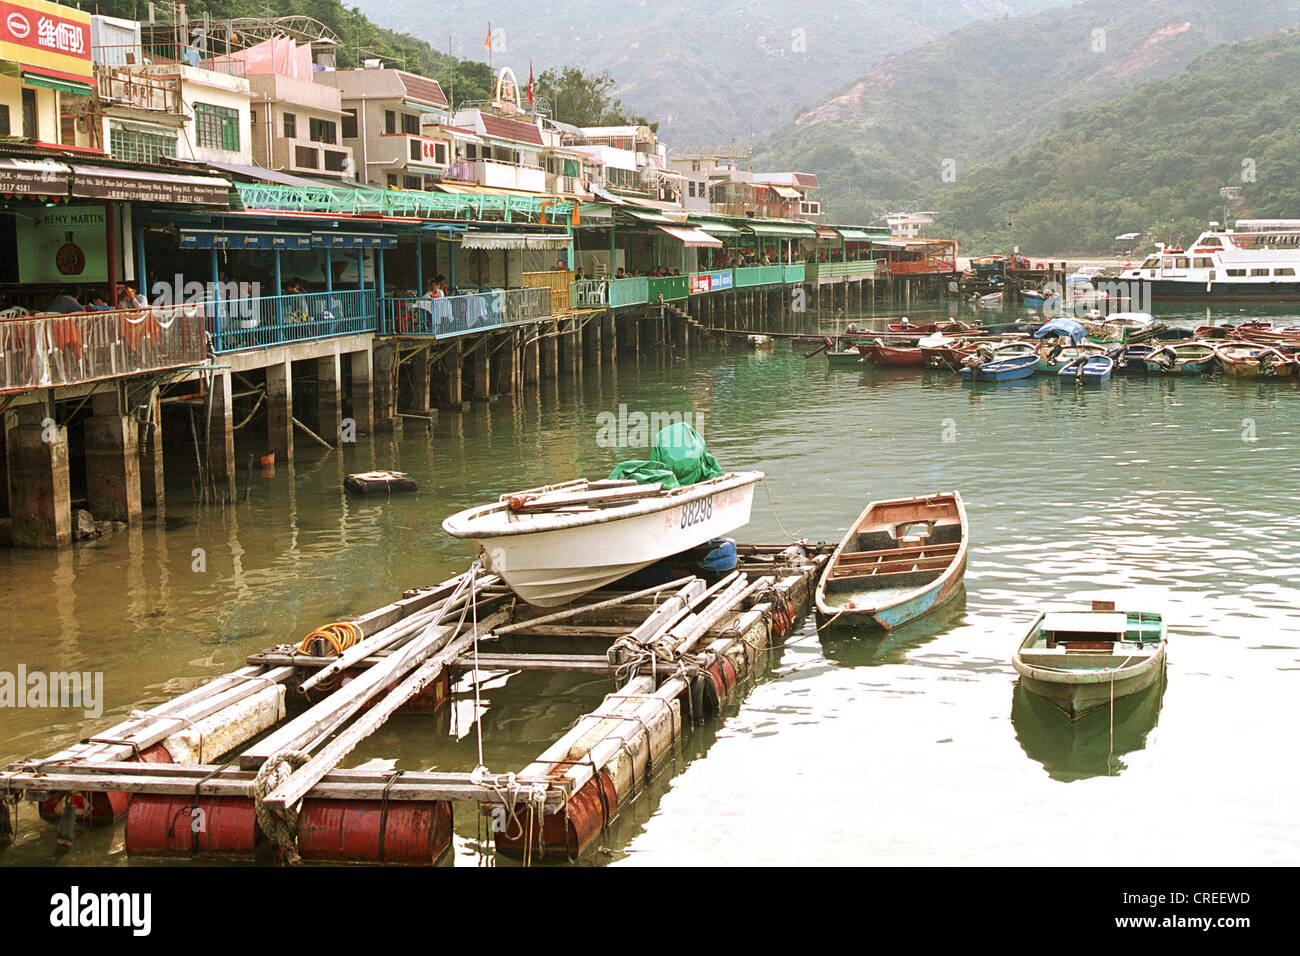 Lamma Islanda, una attrazione turistica di Hong Kong Foto Stock